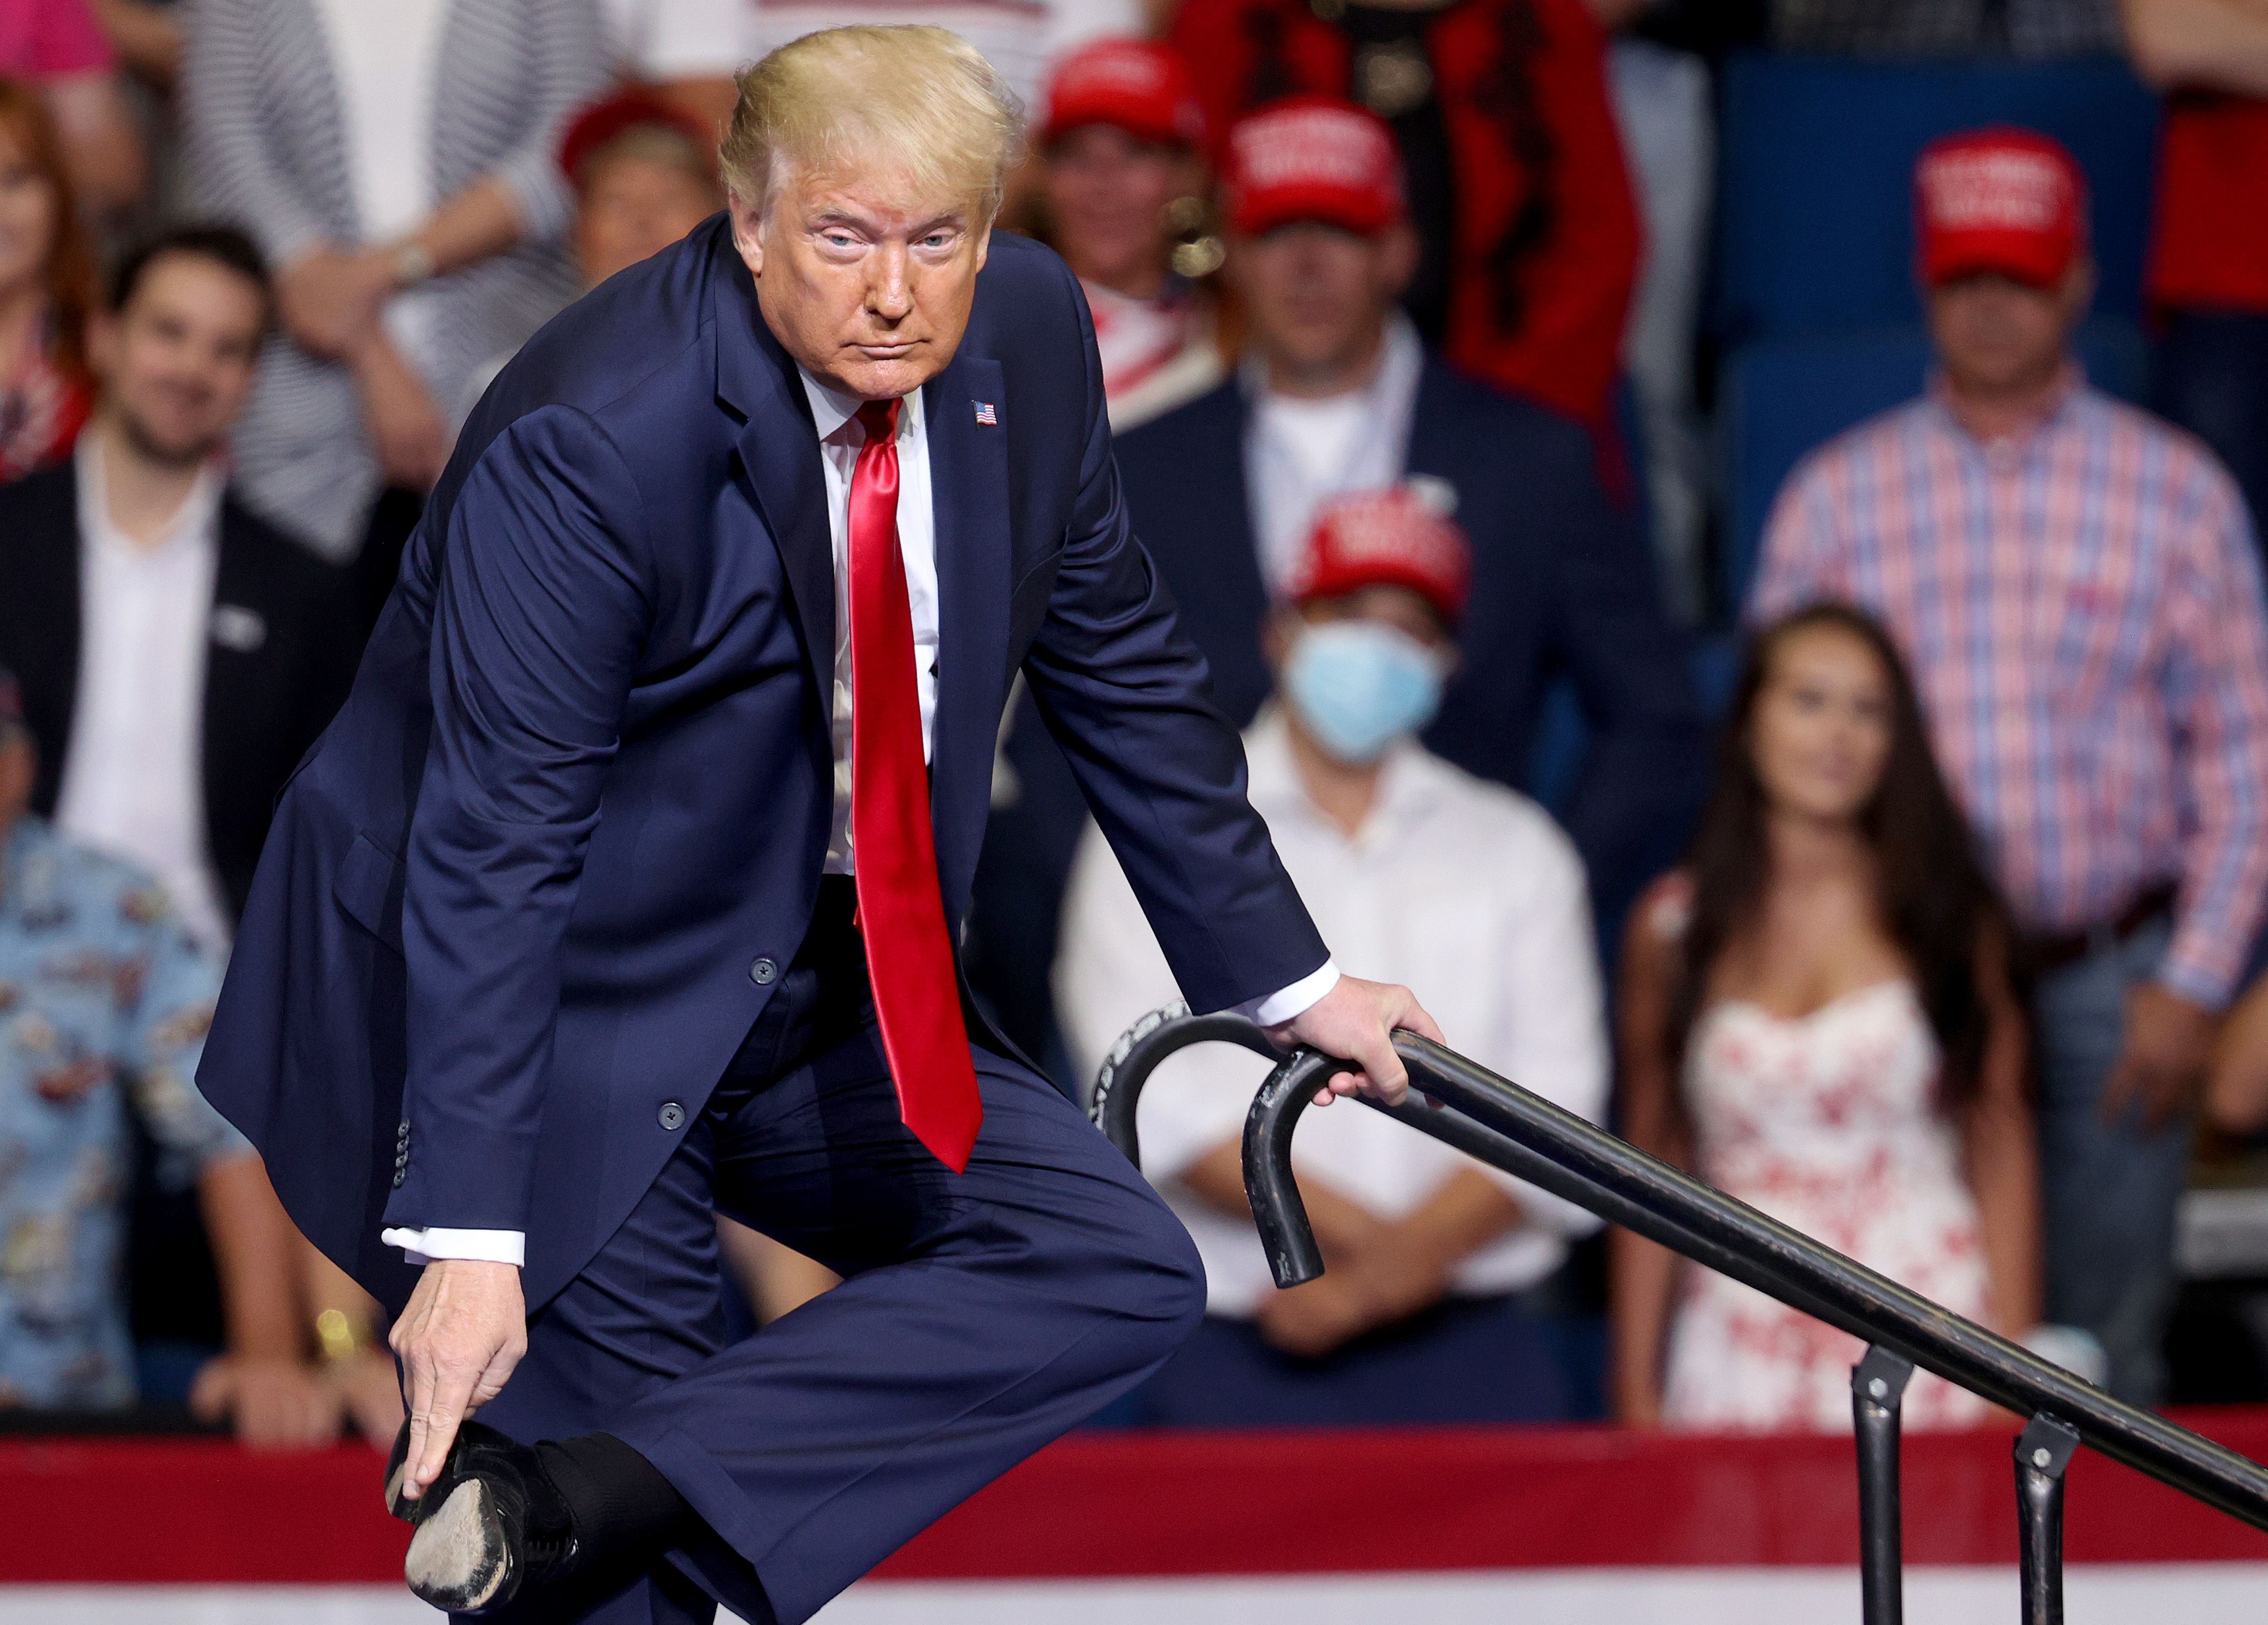 Trump reenacting ramp